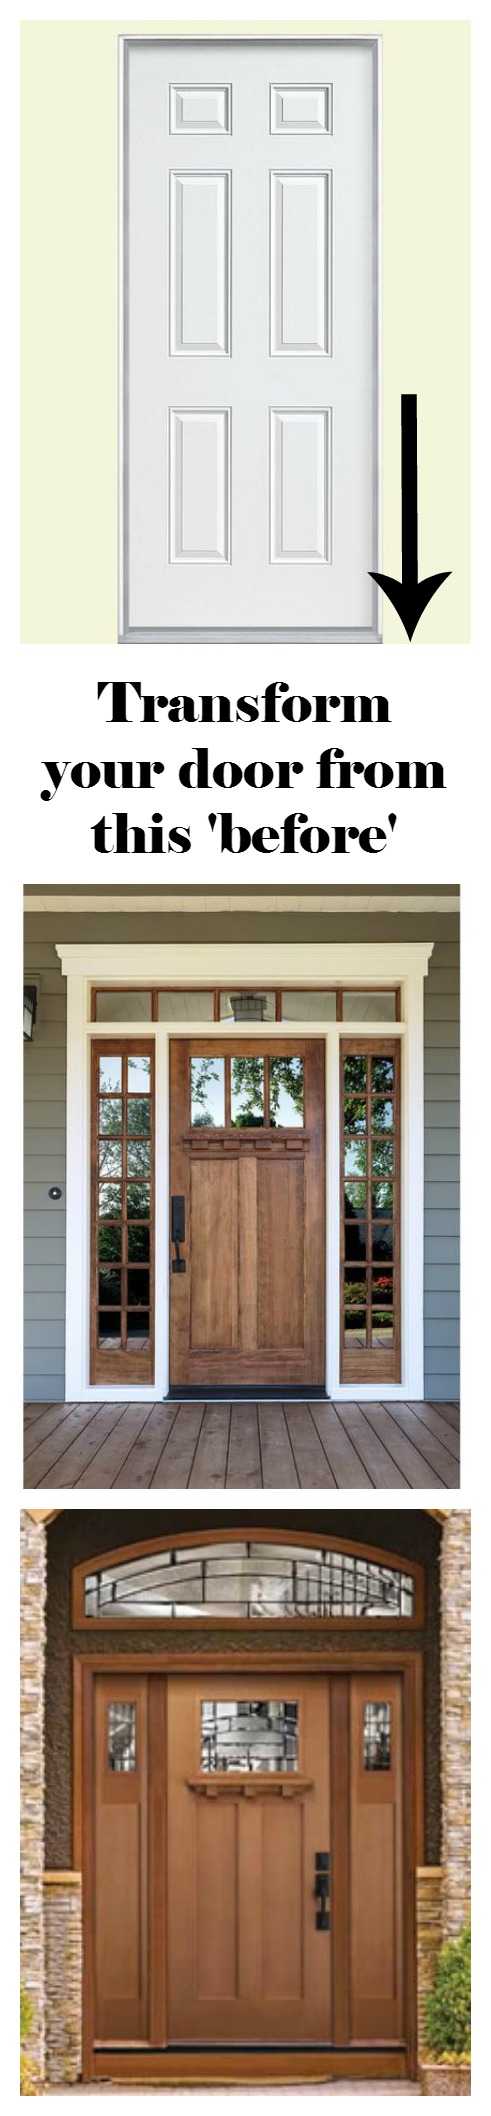 transform-front-door-before